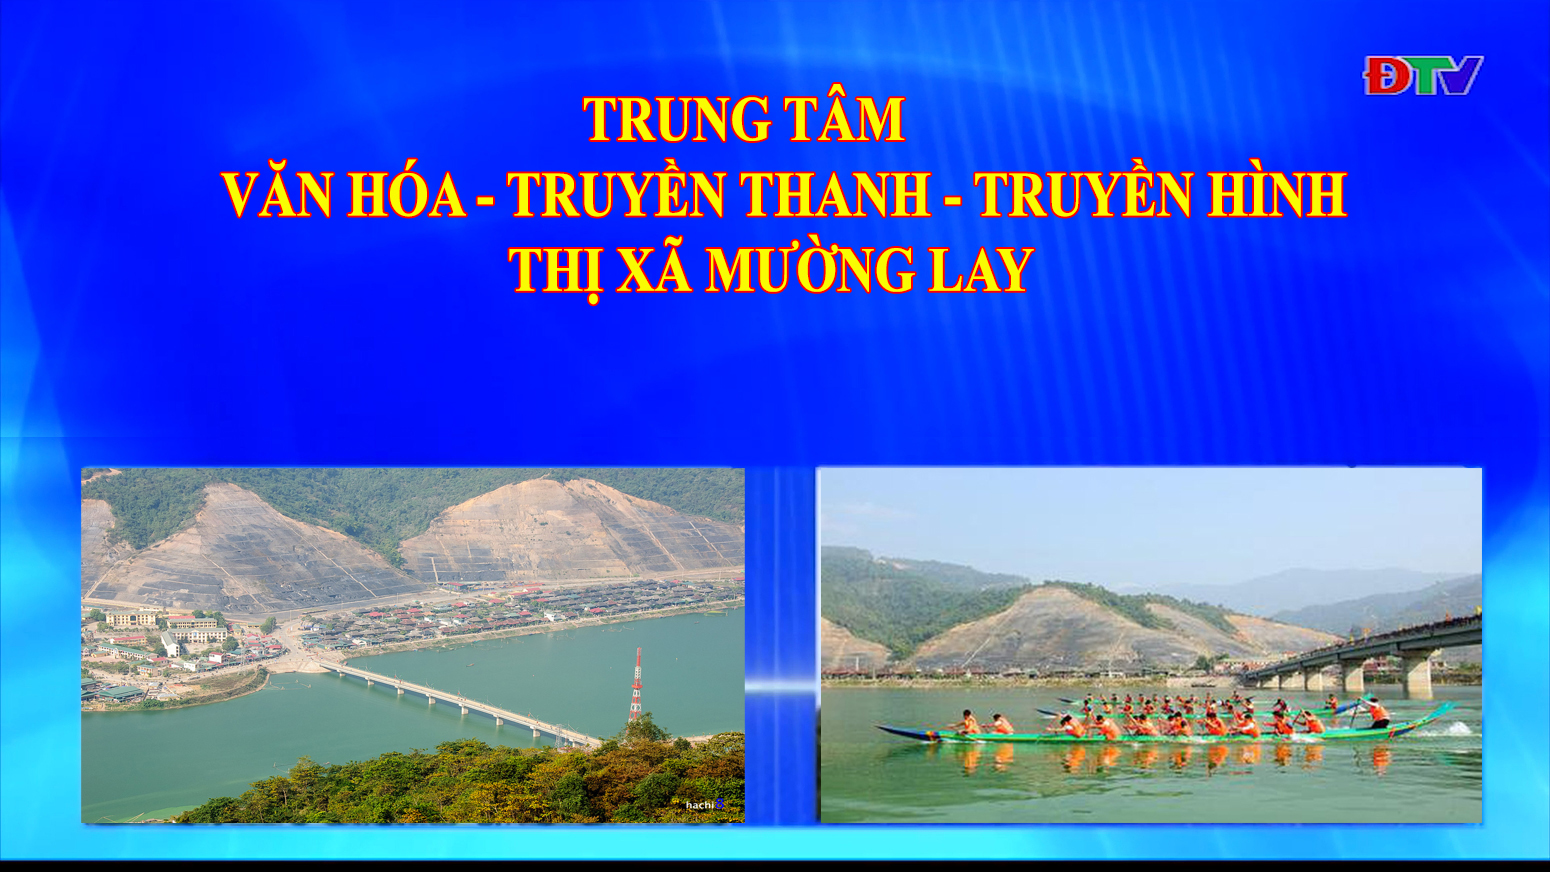 Trung tâm VH-TTTH thị xã Mường Lay (Ngày 27-11-2020)